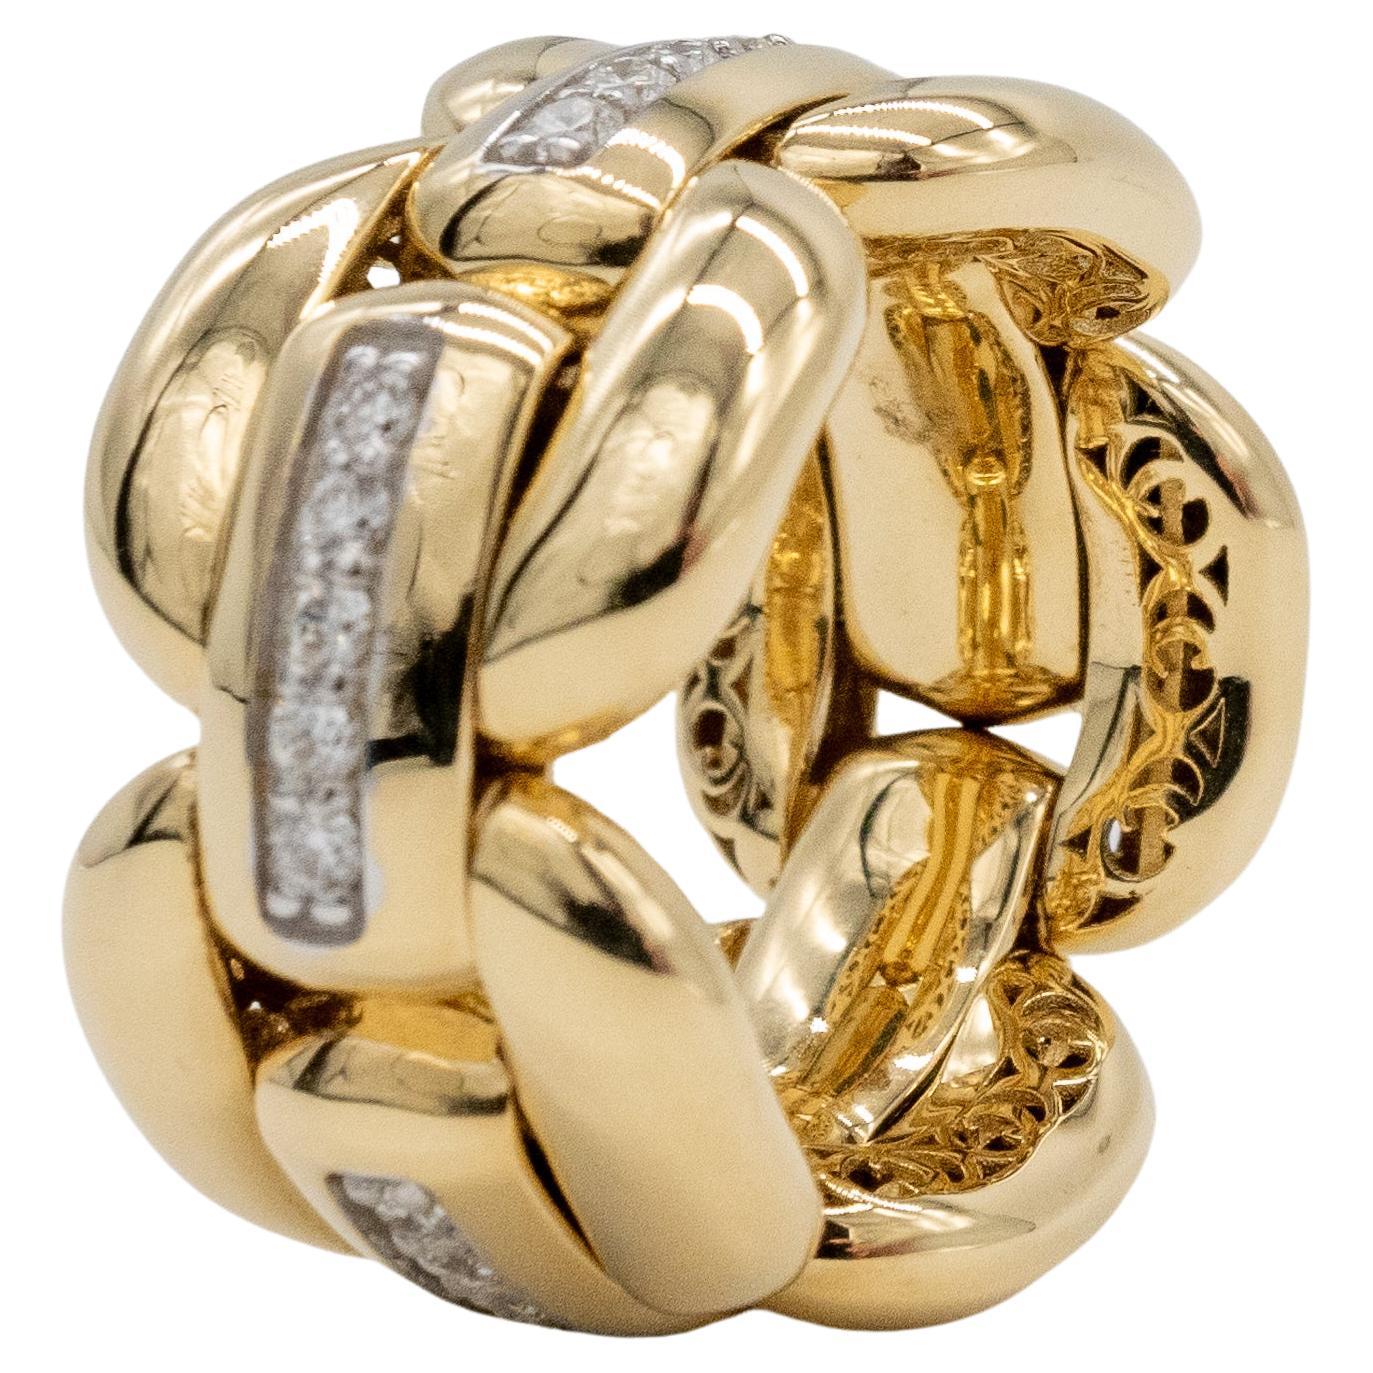 Goldring und artikulierte Diamanten
Wir sind begeistert von der Benutzerfreundlichkeit dieses Gelenkrings.
Er ist in der Größe flexibel und kann an verschiedenen Fingern getragen werden.
es ist aus 18 Karat Gelbgold und wiegt 15,20 Gramm
 Er ist mit